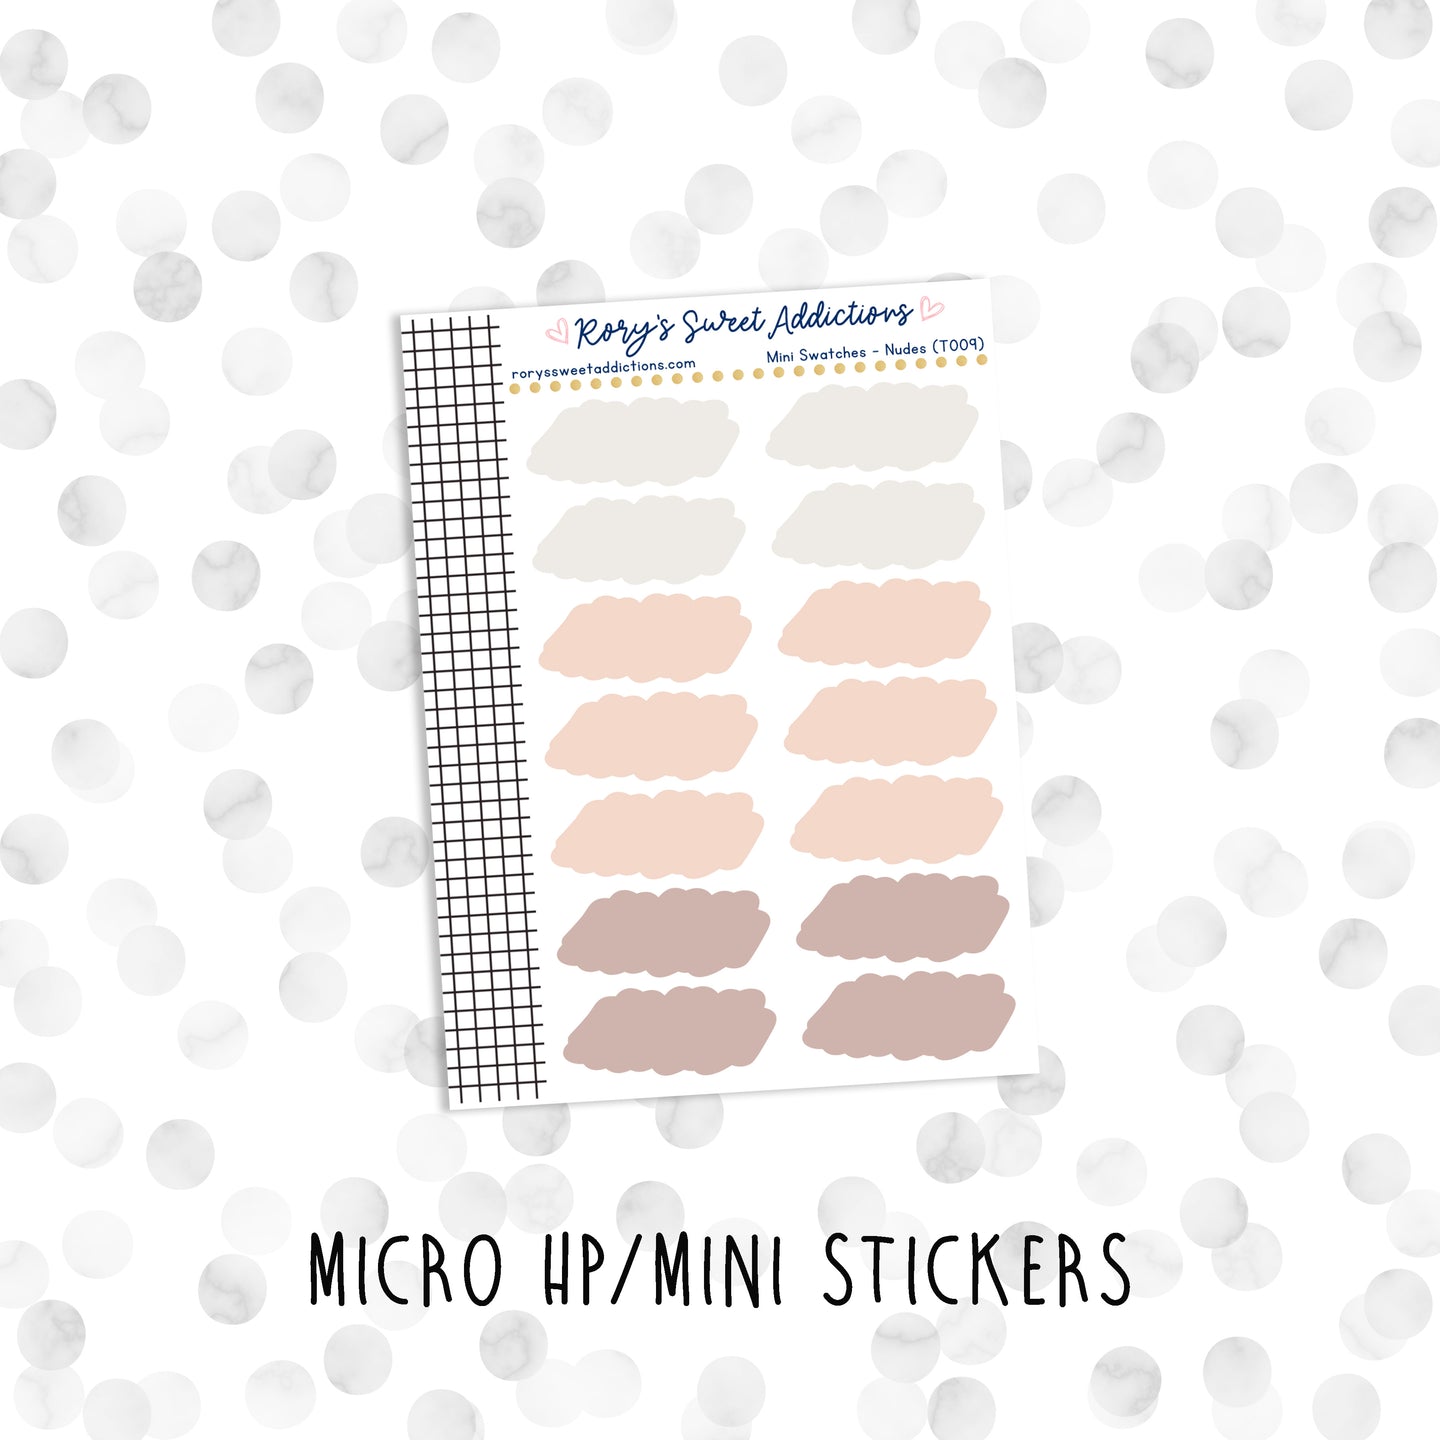 Mini Swatches - Nudes // Micro HP - Mini Stickers